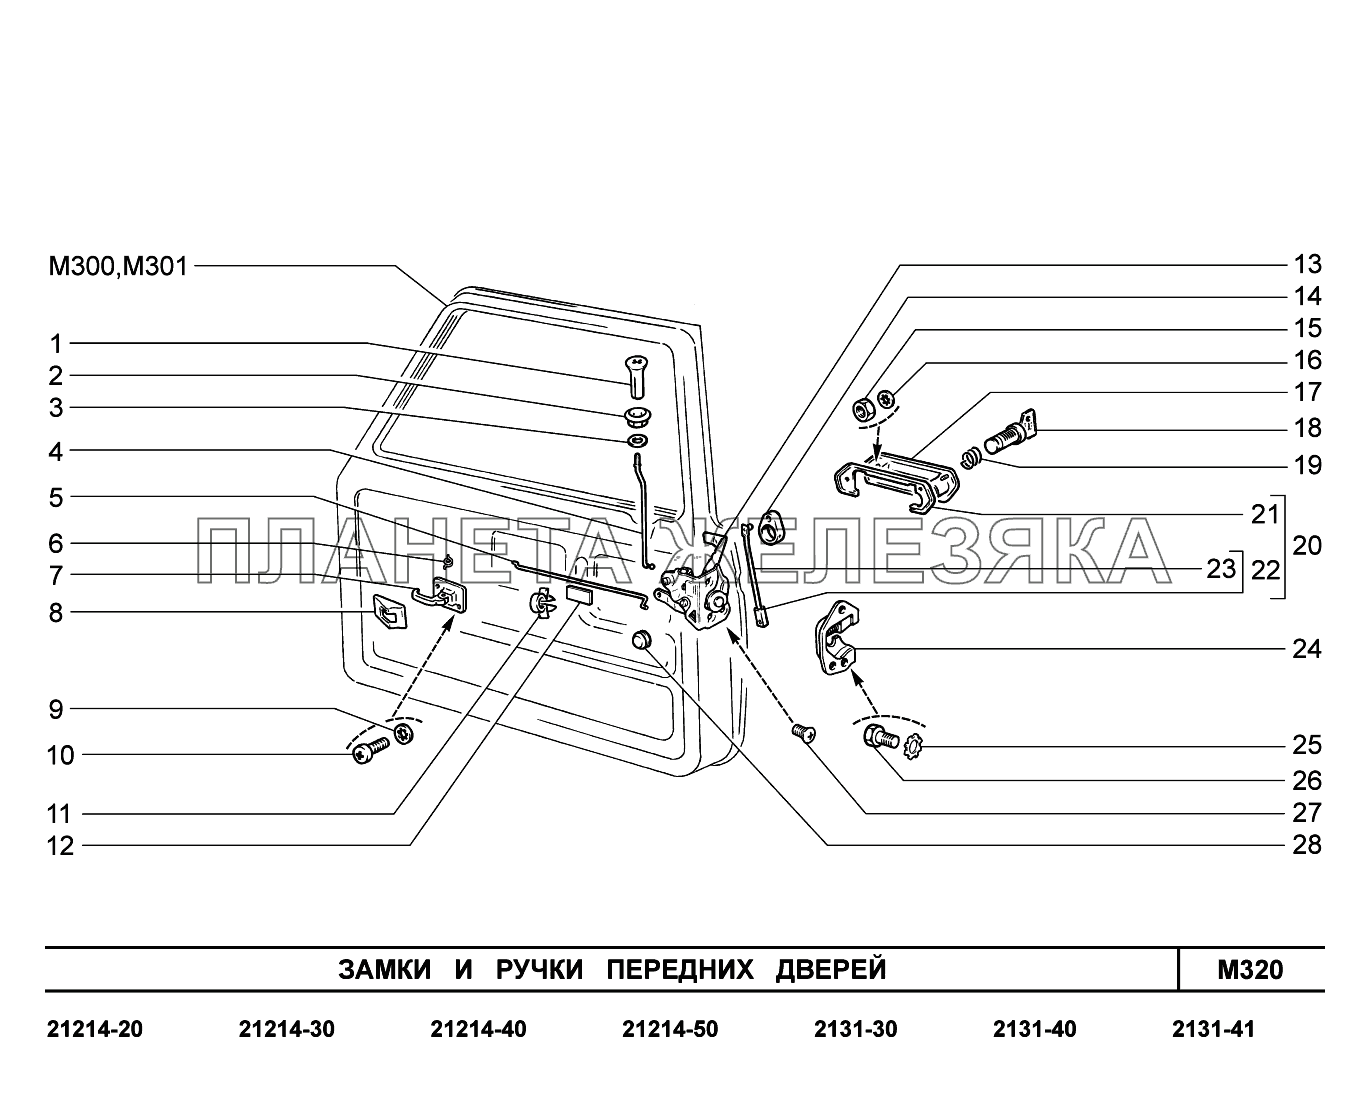 M320. Замки и ручки передних дверей LADA 4x4